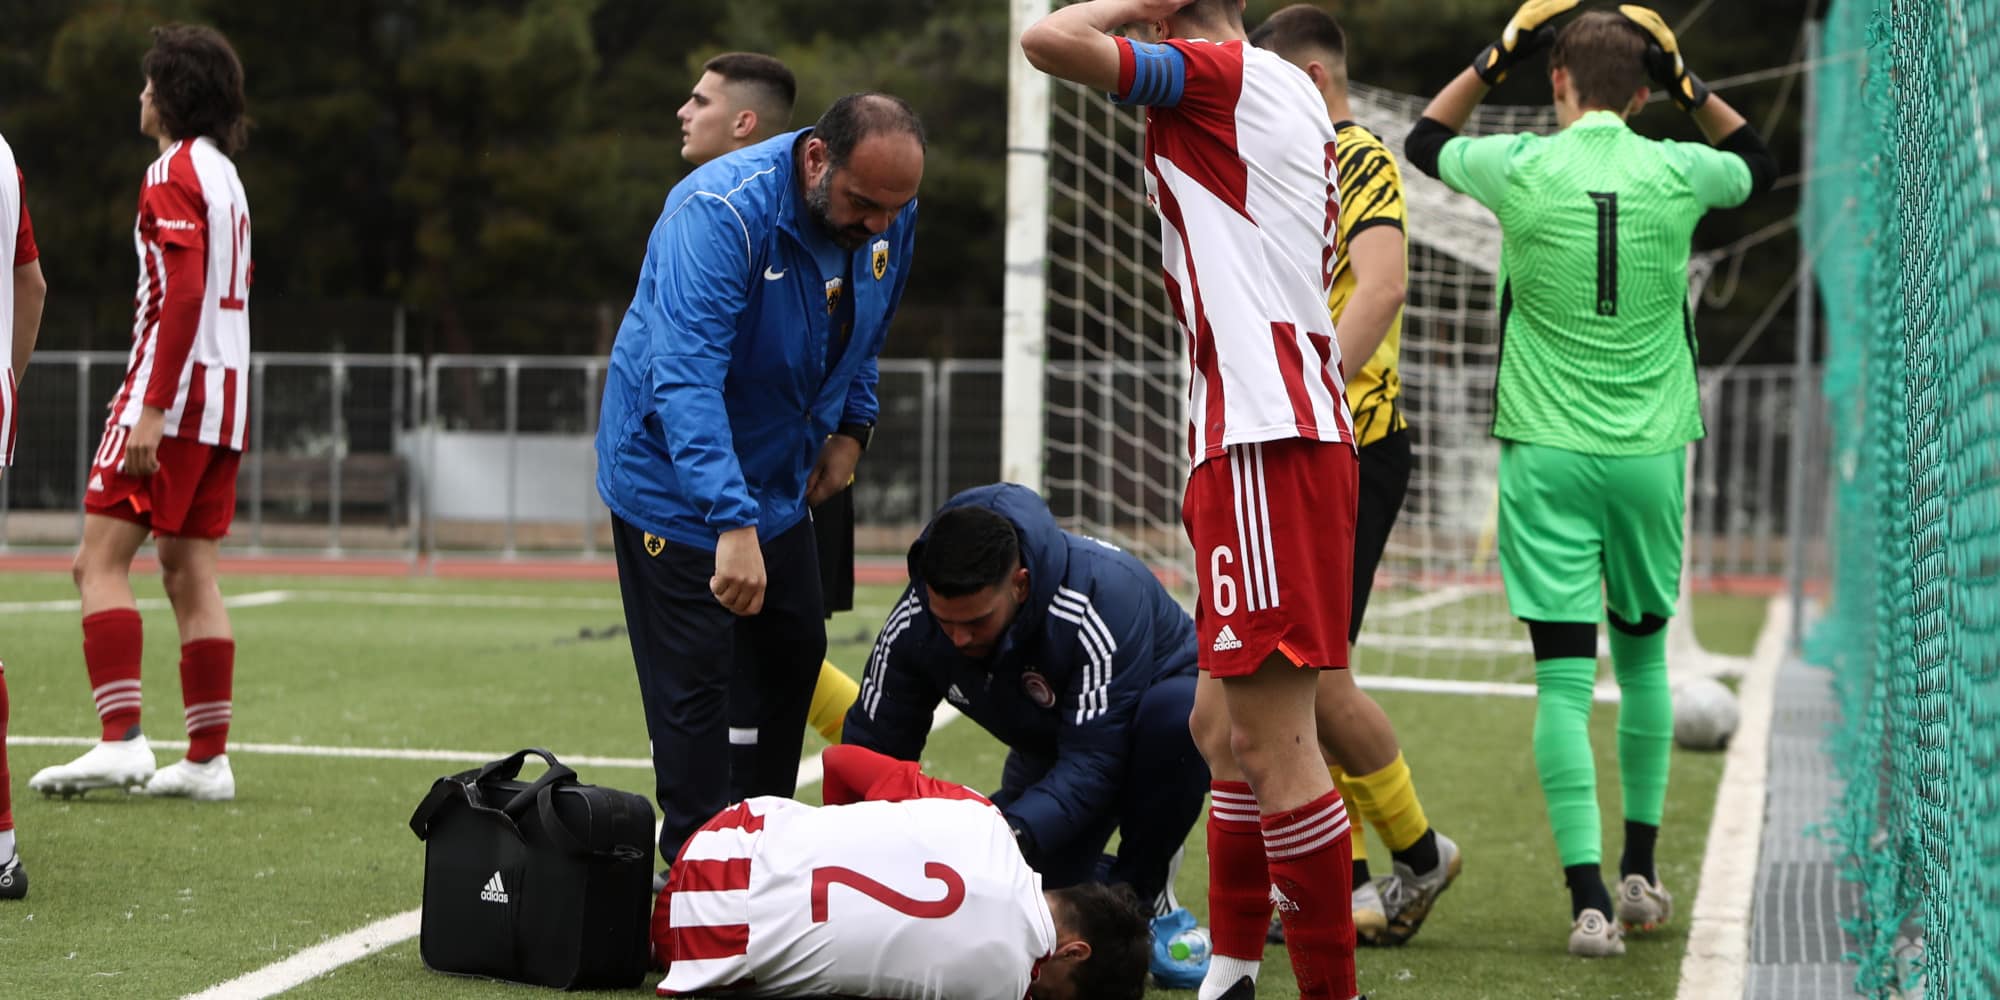 Σπουδαία κίνηση από την ΑΕΚ: Το ιατρικό τιμ έσπευσε να βοηθήσει σοβαρό τραυματισμό παίκτη του Ολυμπιακού (εικόνες)